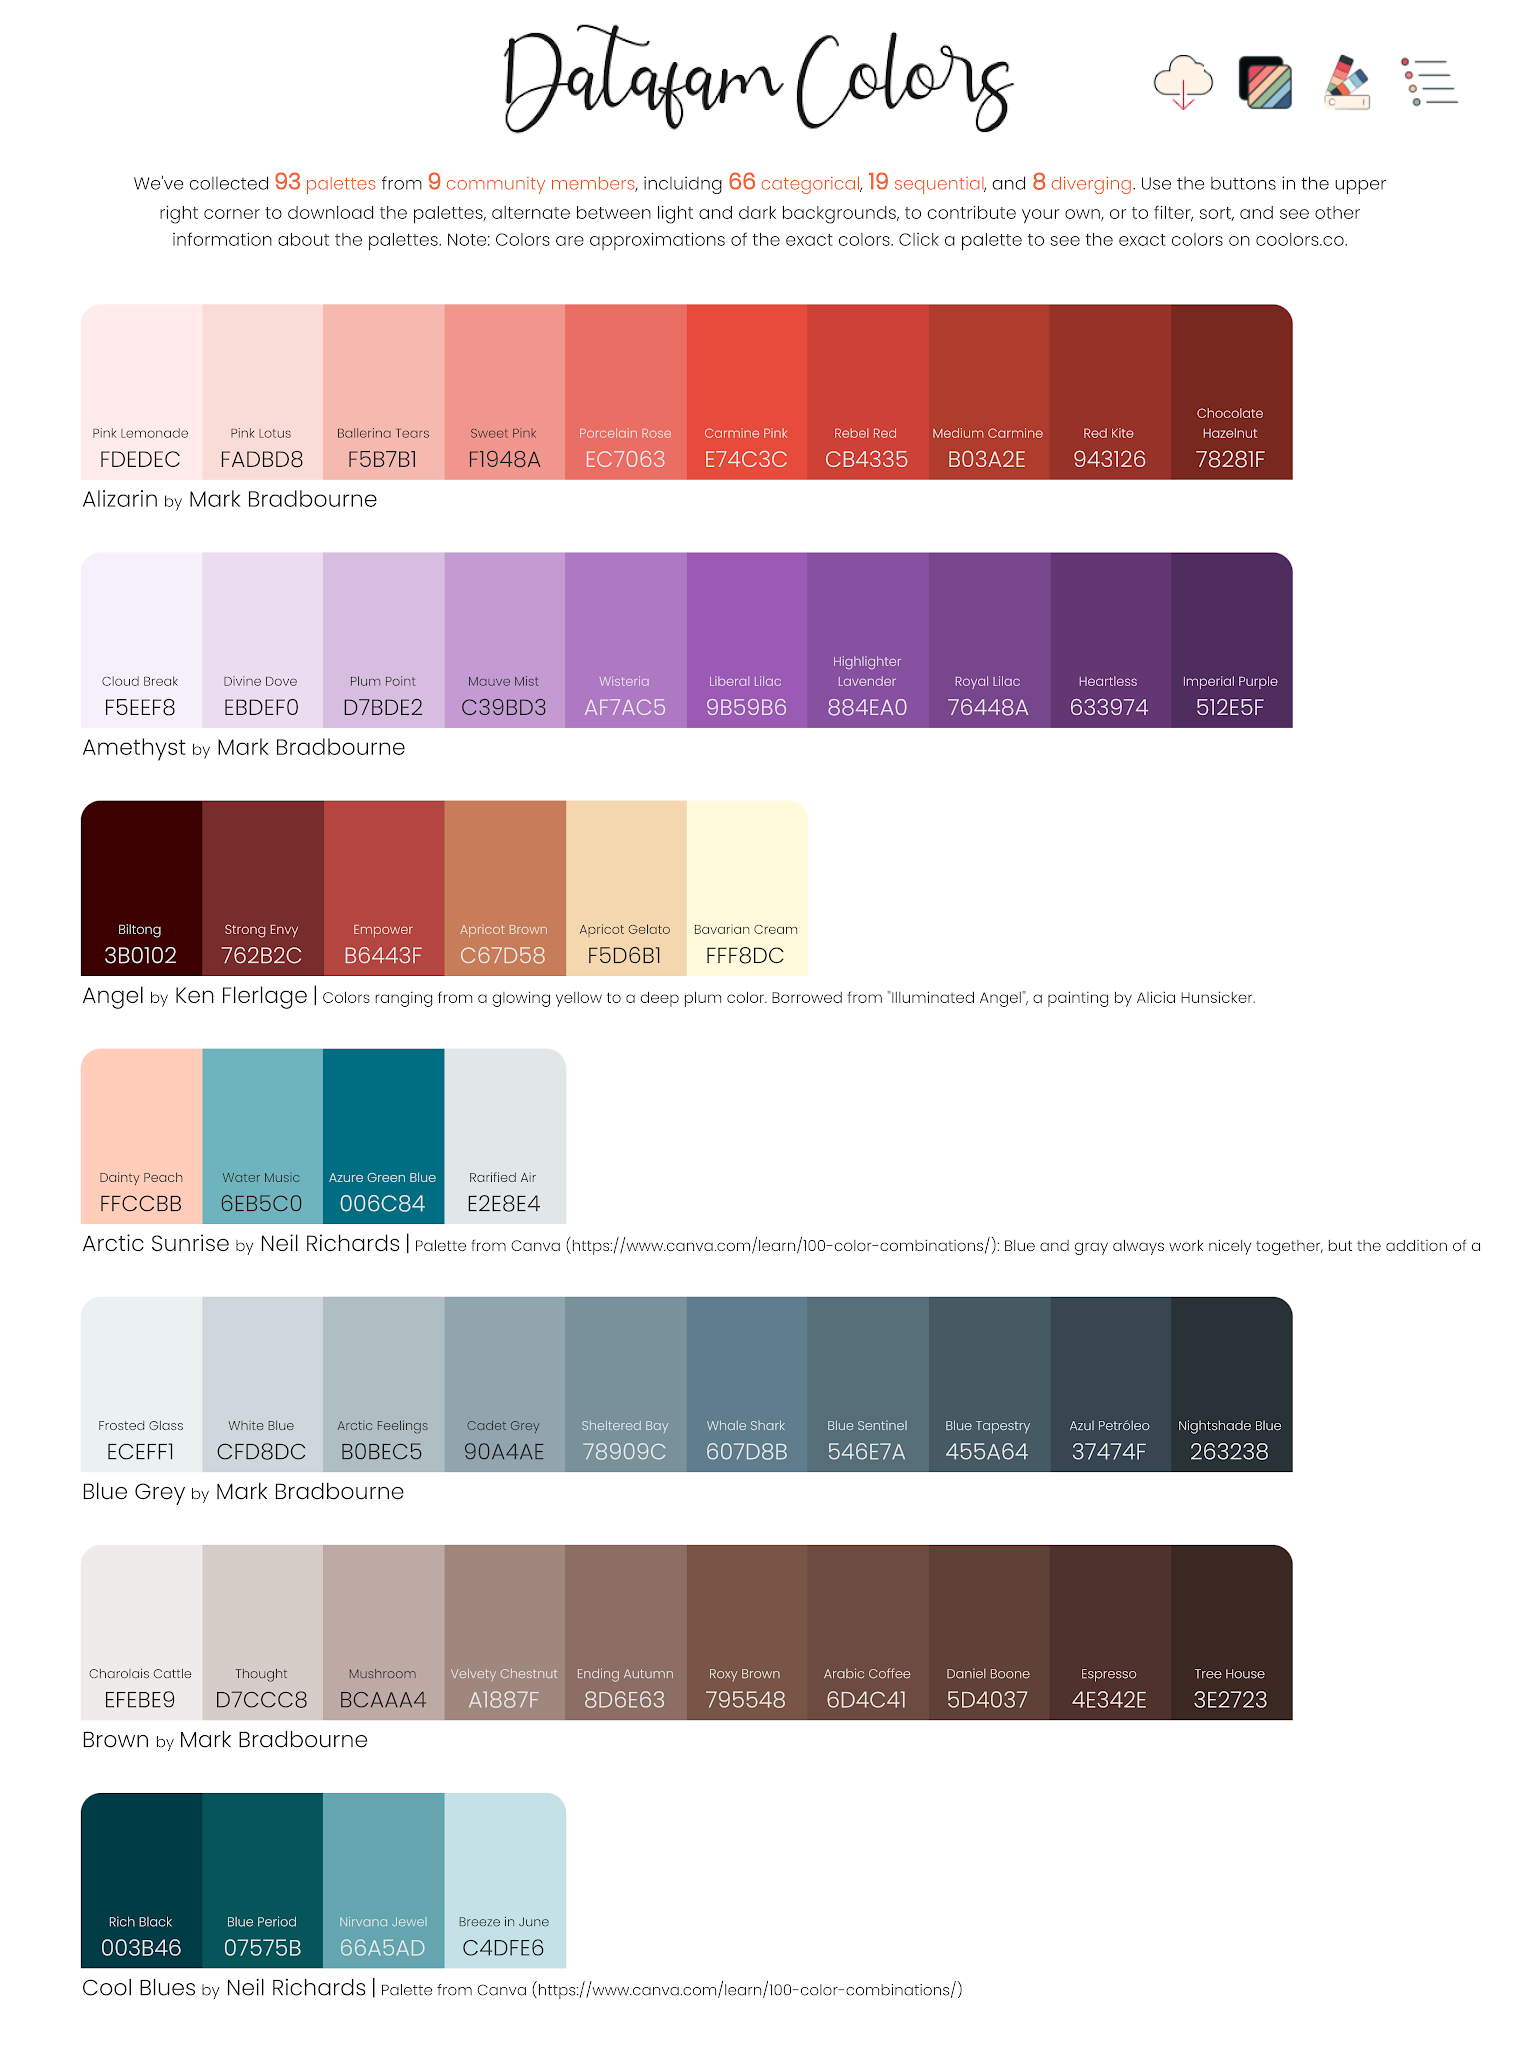 Datafam Colors: A Tableau Color Palette Crowdsourcing Project